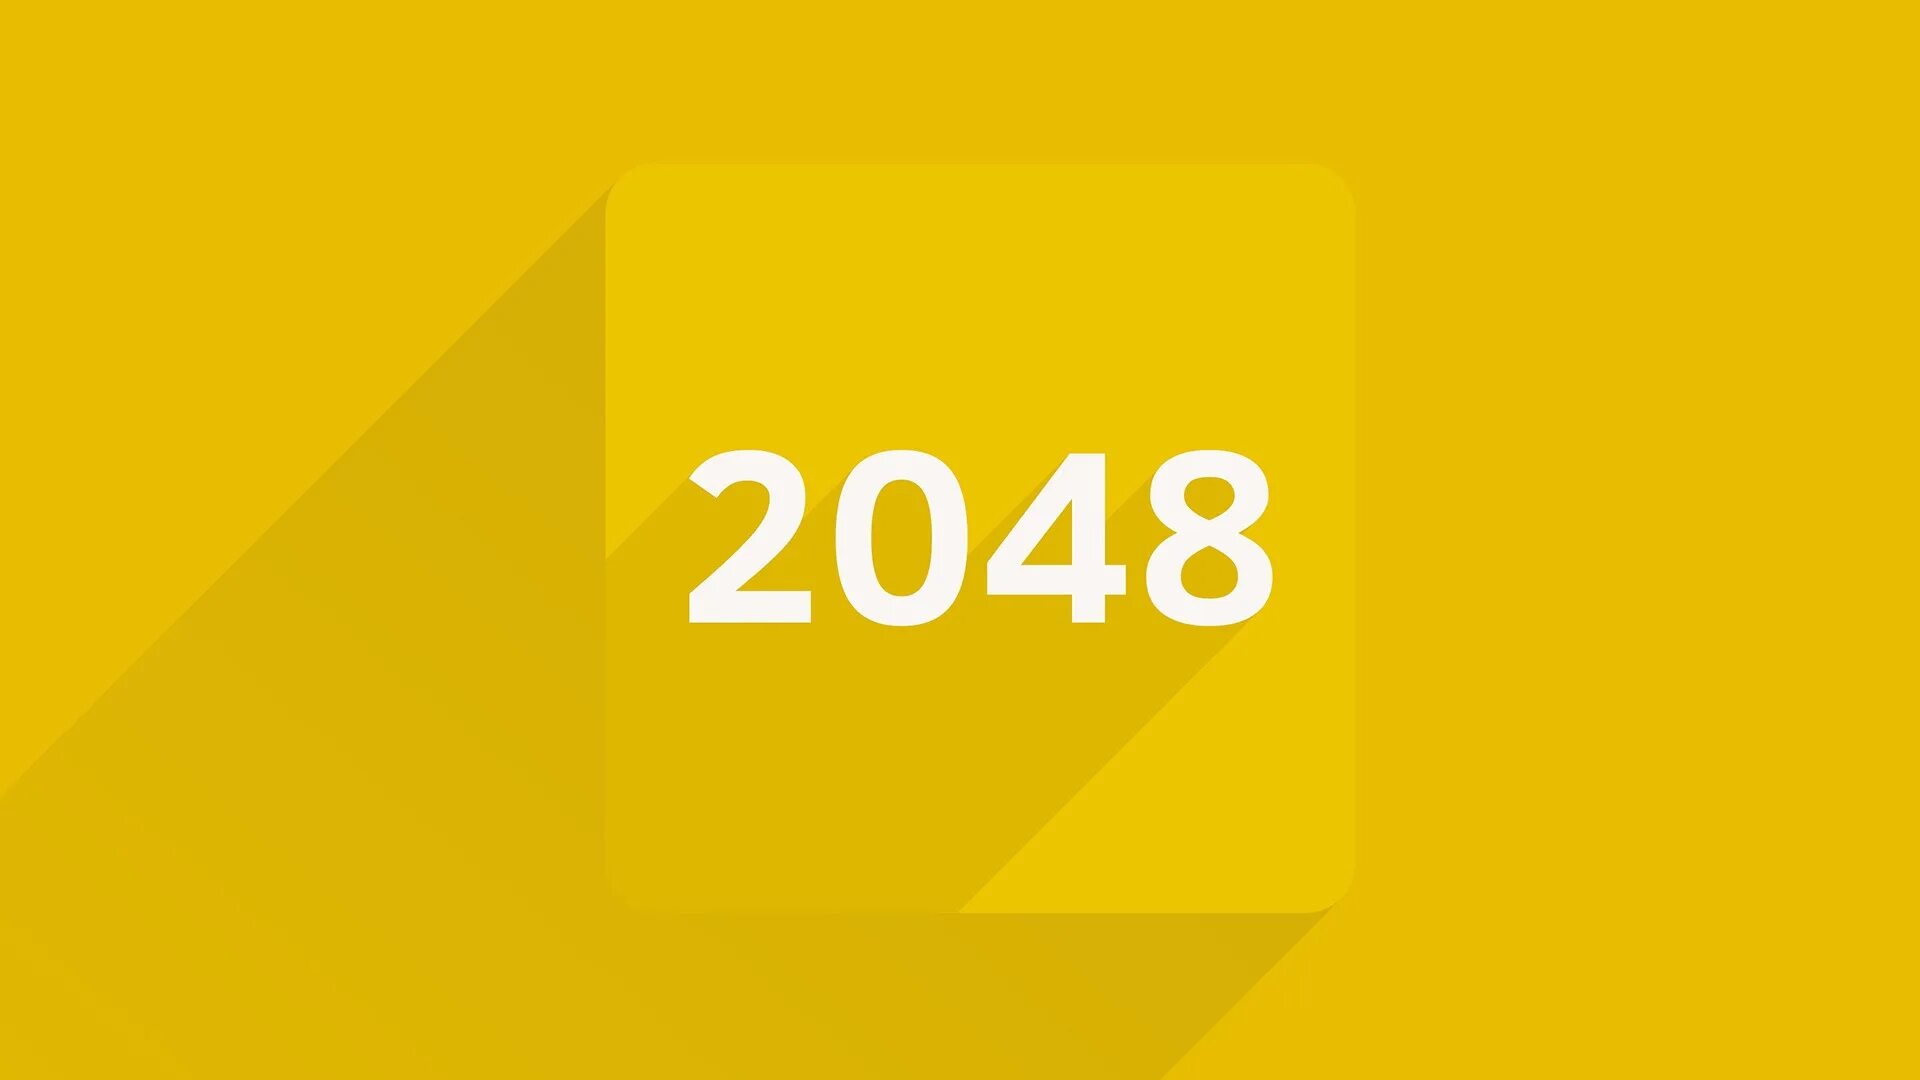 2048 (Игра). 2048 Иконка. 2048 Цифры. Иконка игры 2048. Играть цифры 2048